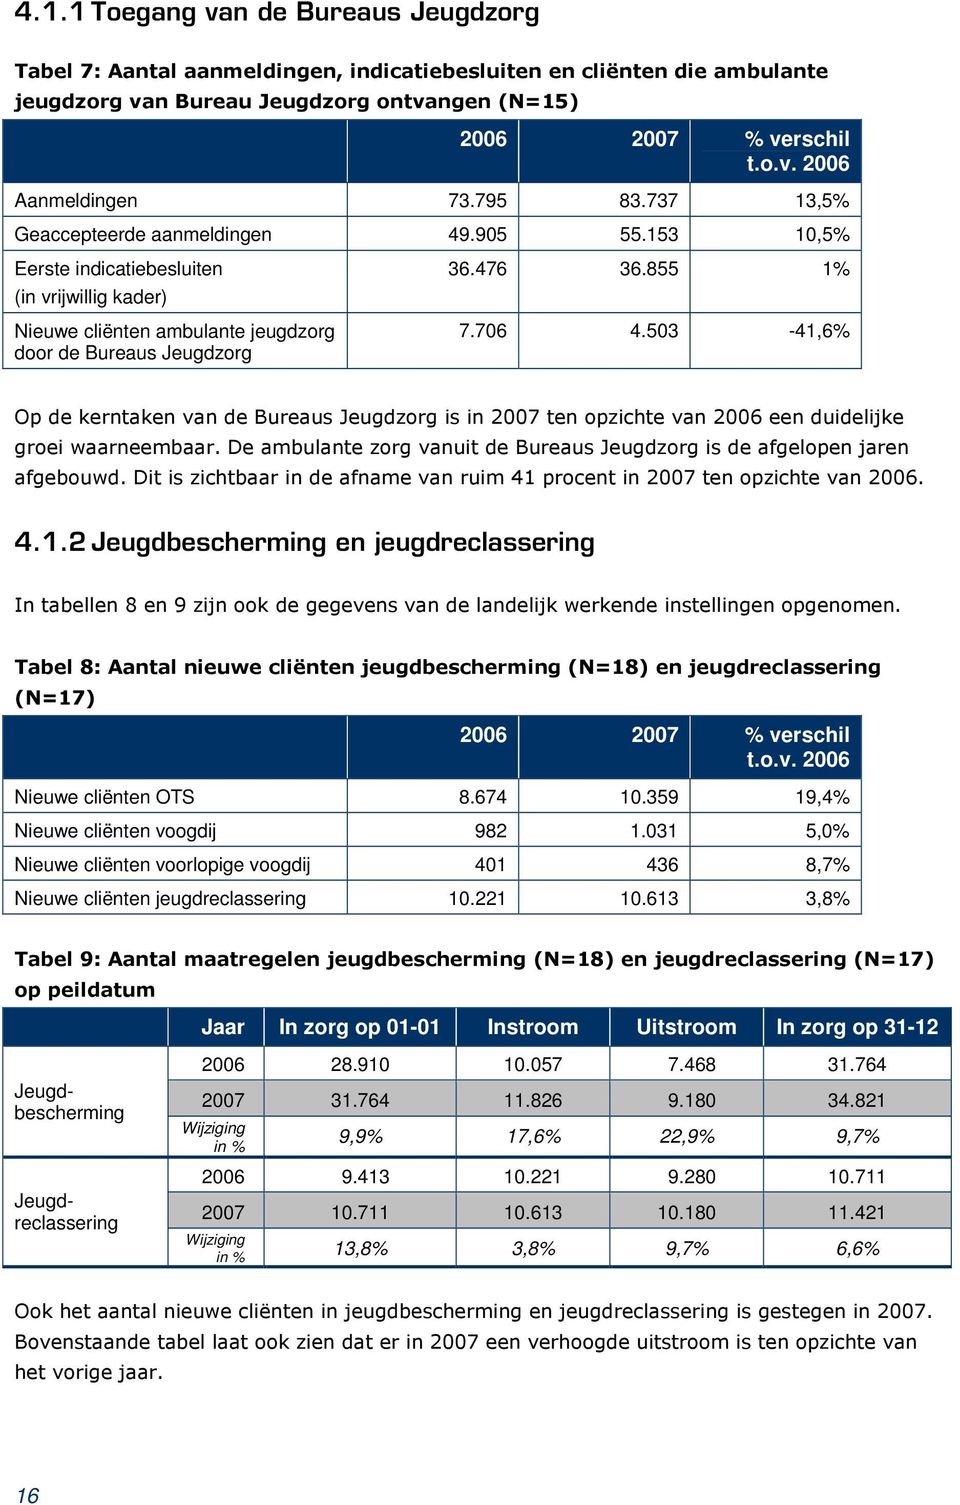 /"/ 2006 2007 % verschil t.o.v. 2006 Nieuwe cliënten OTS 8.674 10.359 19,4% Nieuwe cliënten voogdij 982 1.031 5,0% Nieuwe cliënten voorlopige voogdij 401 436 8,7% Nieuwe cliënten jeugdreclassering 10.